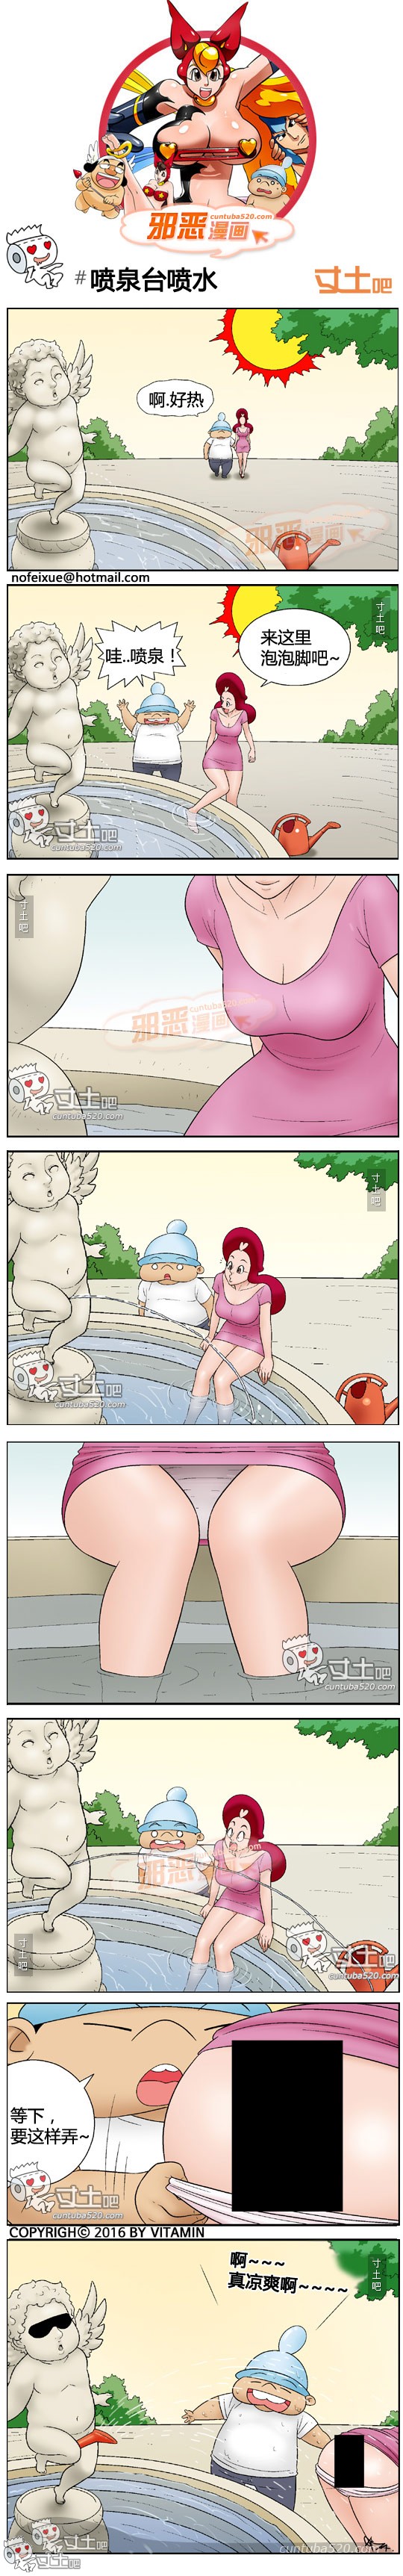 邪恶漫画喷泉台喷水